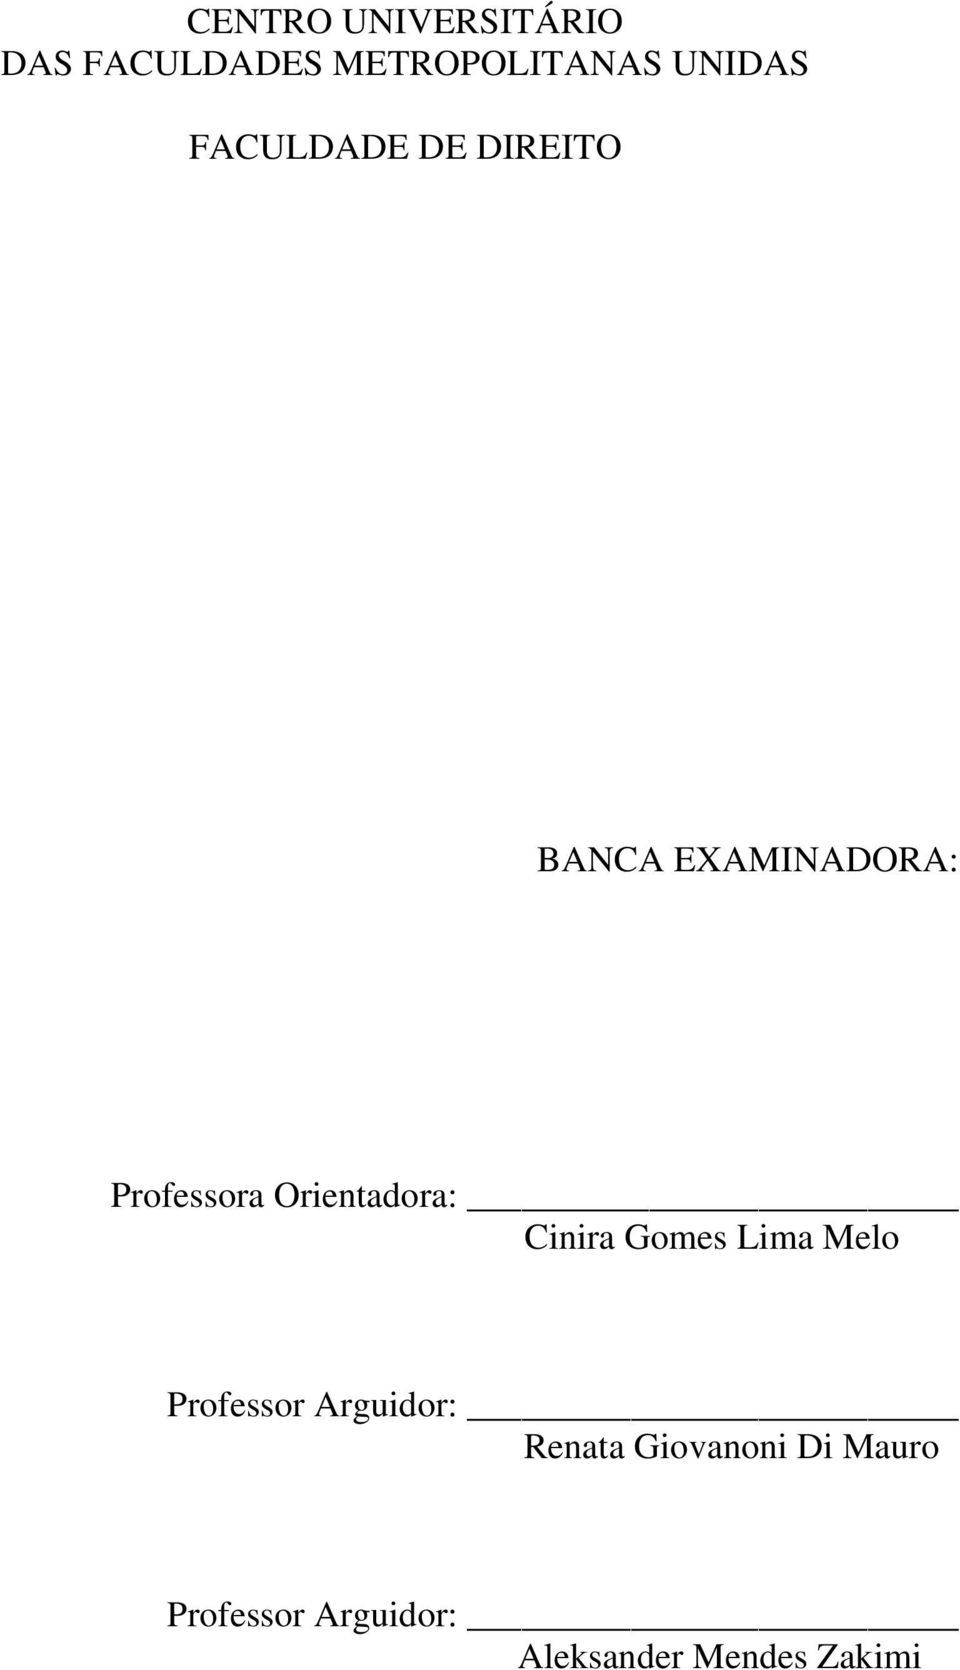 Orientadora: Cinira Gomes Lima Melo Professor Arguidor: